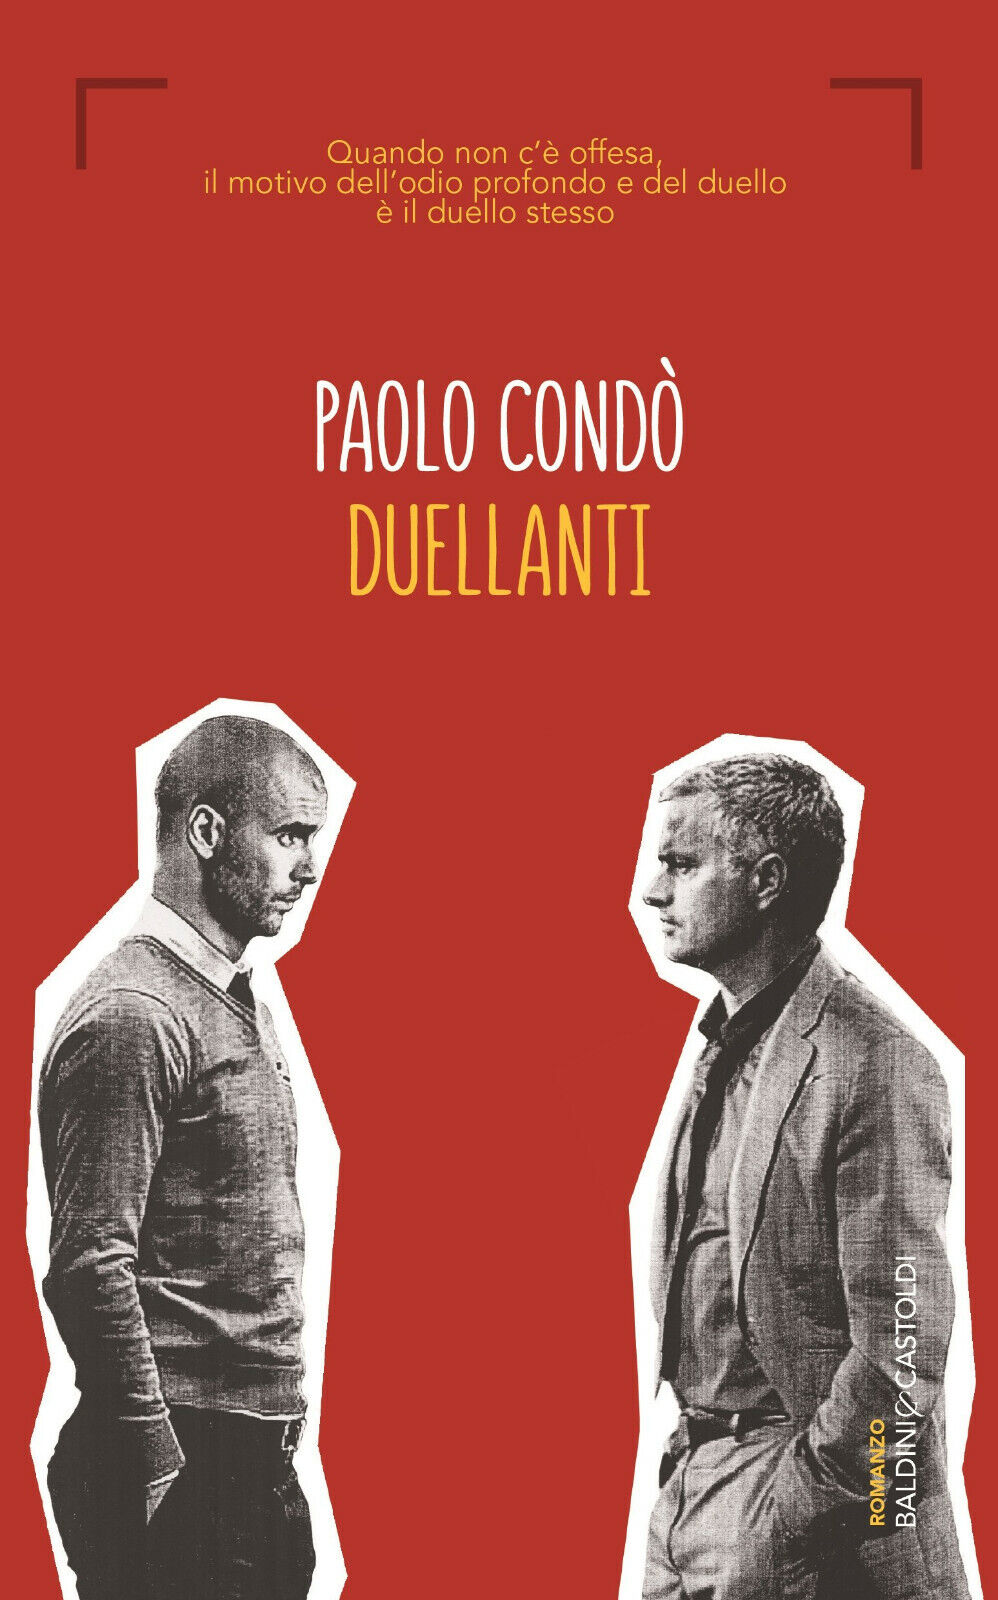 Duellanti - Paolo Cond? - Baldini + Castoldi, 2016